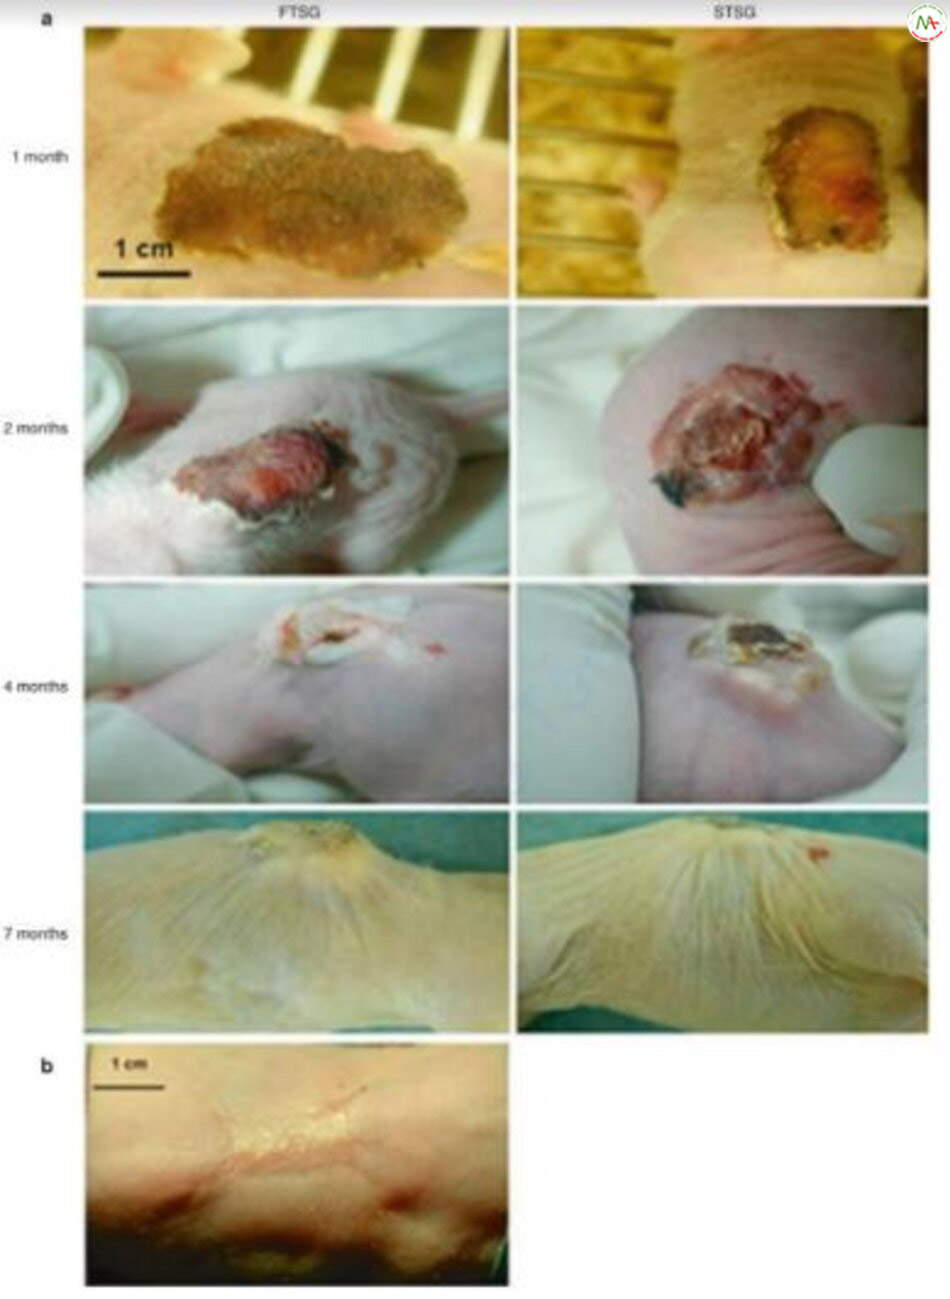 Hình 3.10 Cả mảnh ghép da người có độ dày đầy đủ (FTSG) và độ dày tách lớp (STSG) đều được ghépvào lưng của con chuột nude và sự tiến triển của sự hình thành sẹo được ghi lại vào thời điểm 1 tháng, 2 tháng, 4 tháng và 7 tháng sau ghép (a). Mảnh da chuột cũng được ghép tuy nhiên không hình thành sẹo (b) [133].